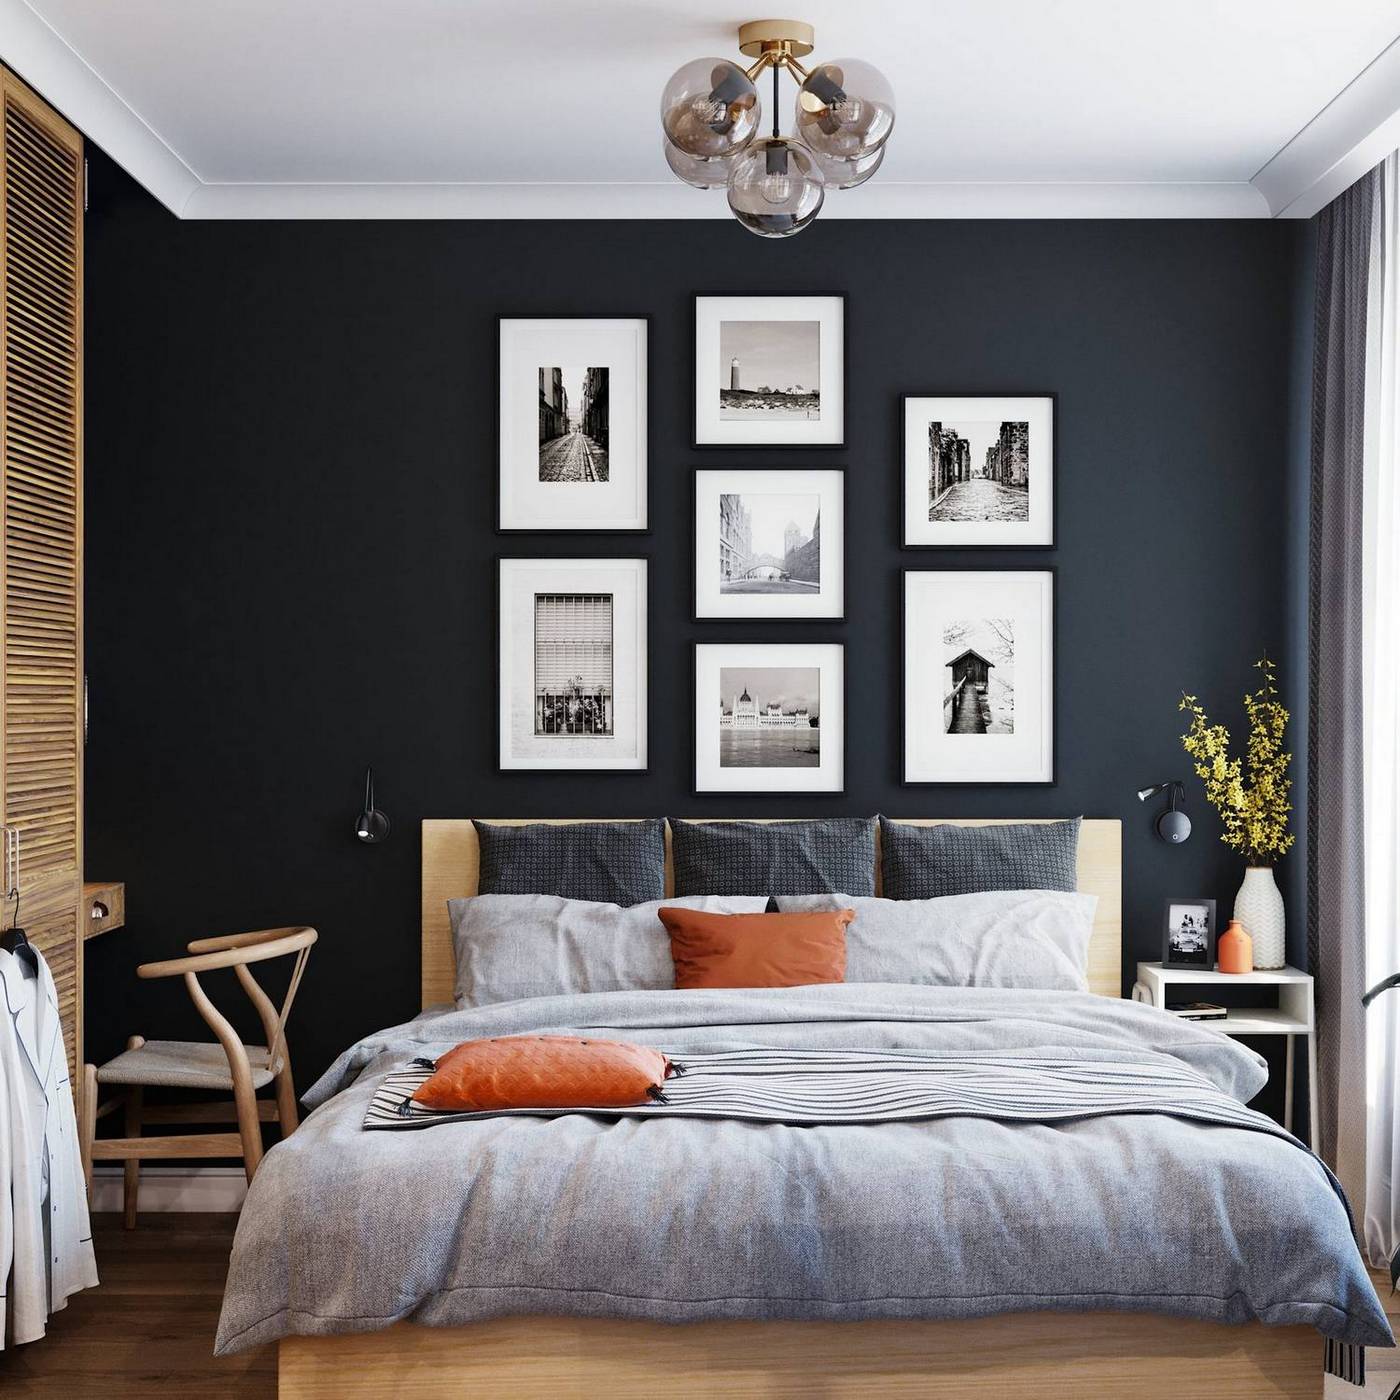 Bức tường sơn màu xám đen đậm, bên trên treo 7 bức tranh trắng đen với kích cỡ khác nhau tạo cho chúng ta sự liên kết về phong cách trang trí với khu vực lối ra vào căn hộ đã giới thiệu ở trên.